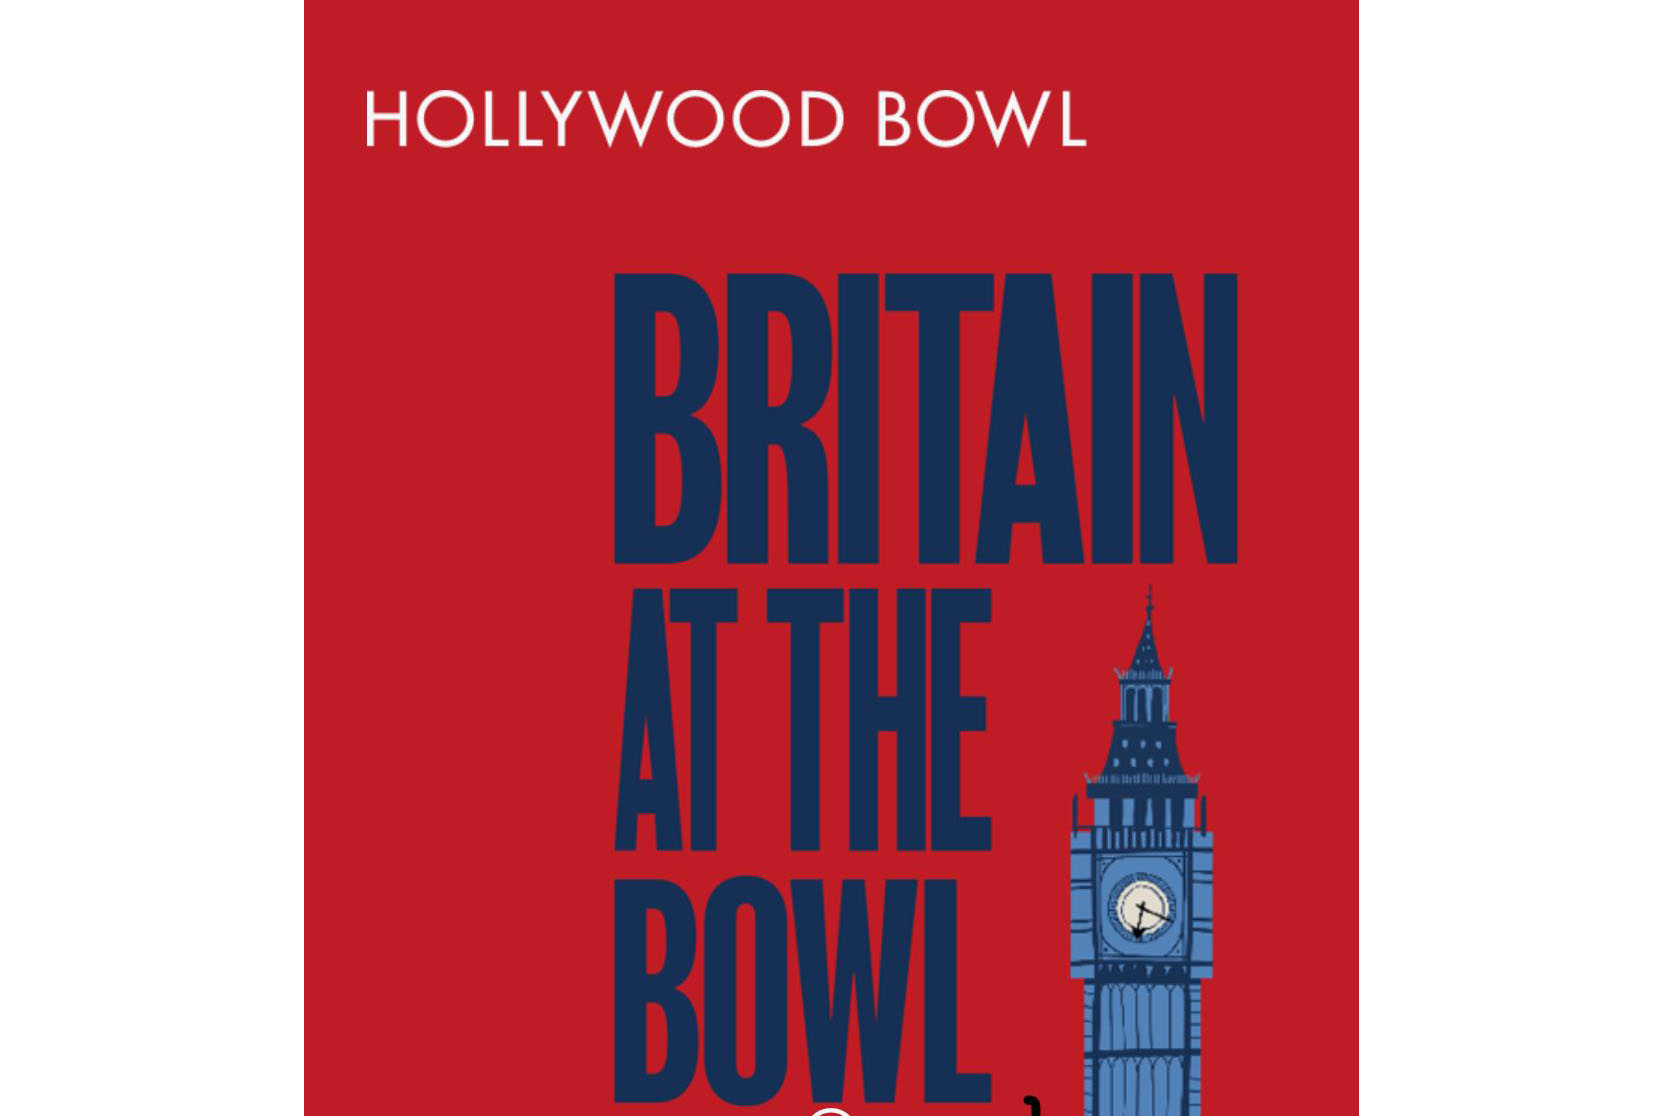 Britain at the Bowl